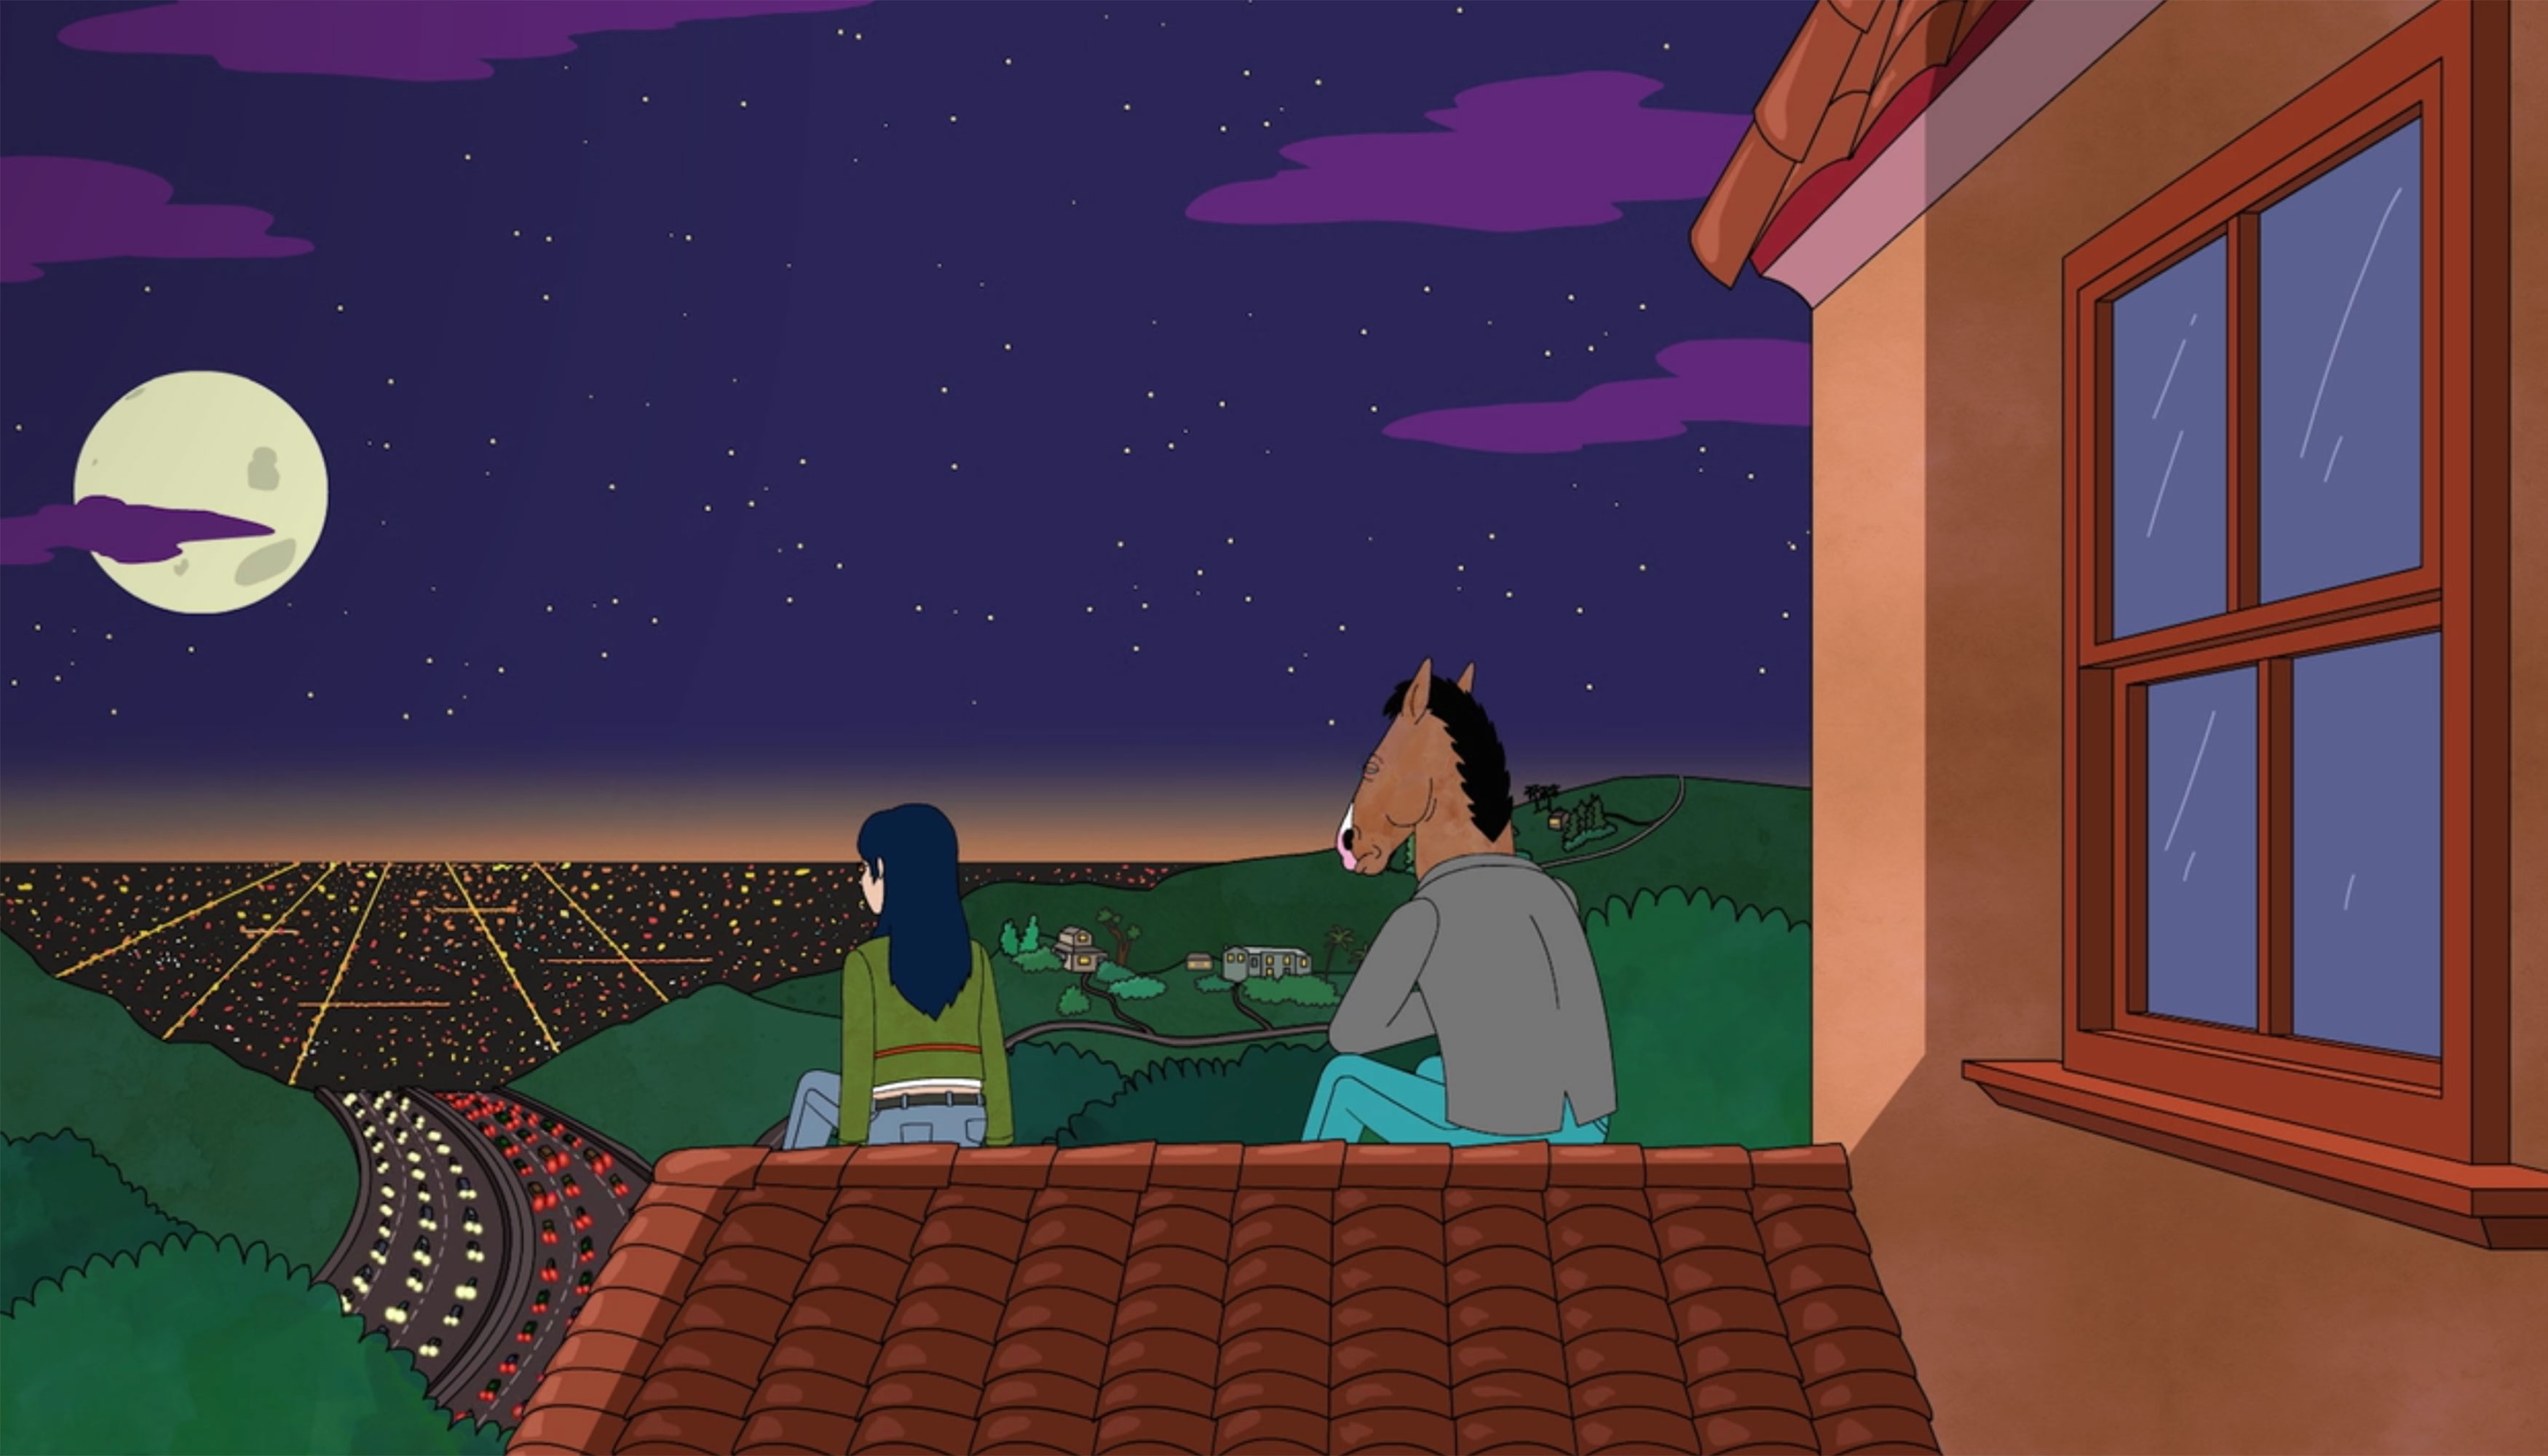 仍来自Netflix系列Bojack骑士。Bojack和朋友坐在俯视洛杉矶城市景观的房子的屋顶上。这是晚上，天空中有一个满月和星星。